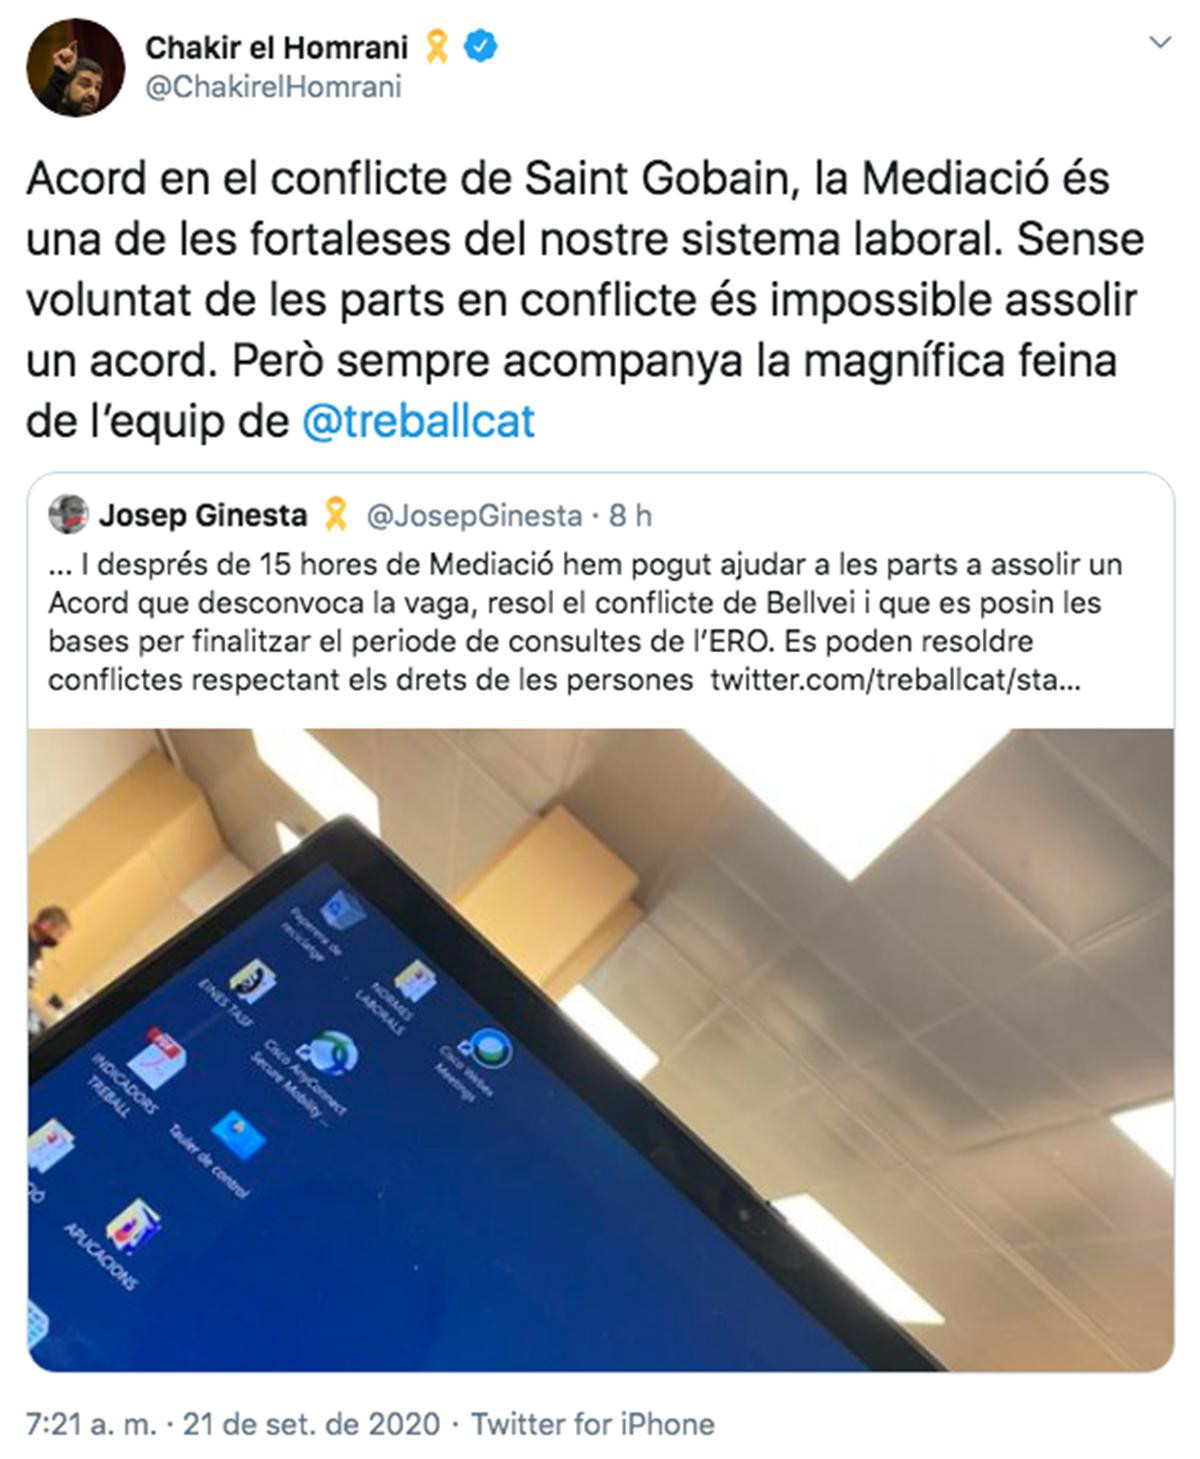 Tuit del consejero de Trabajo, Chaki el Homrani, tras el acuerdo entre la plantilla y Saint-Gobain